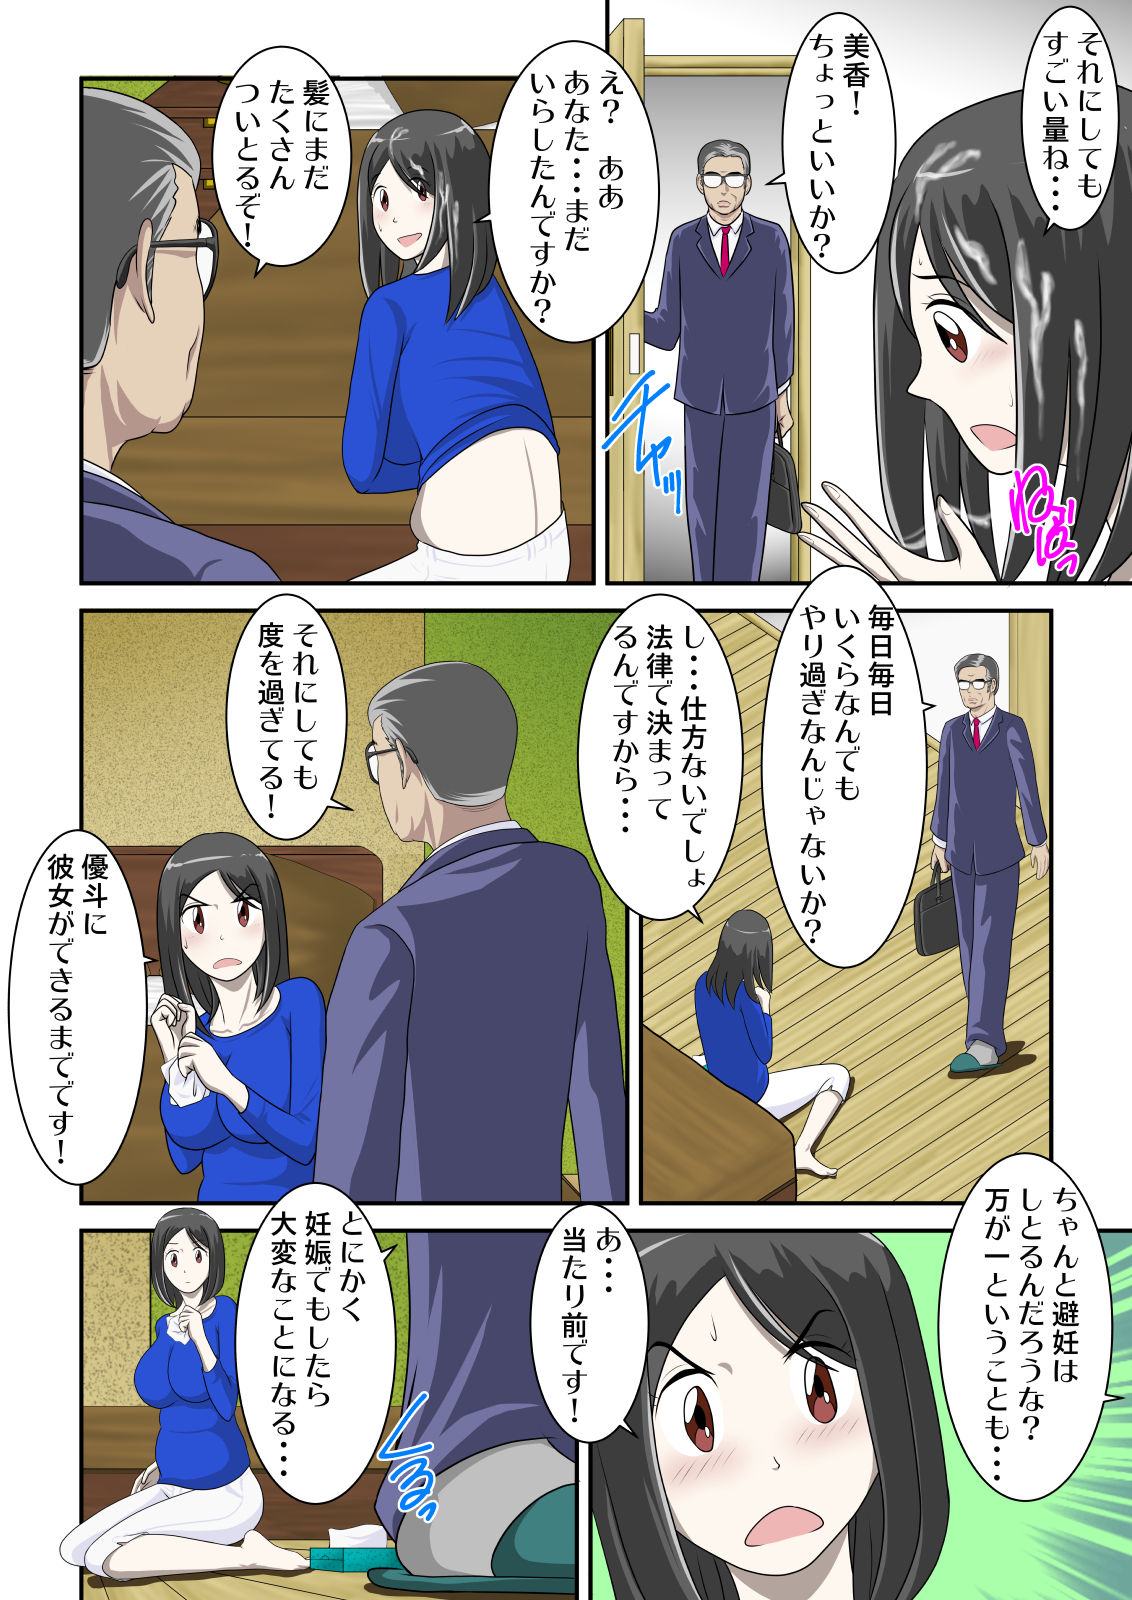 [WXY COMICS] Toaru Jijou kara SEX Suru Hame ni Nari, Hontou ni Hamechatta Toaru Boshi no Ohanashi 2 page 13 full